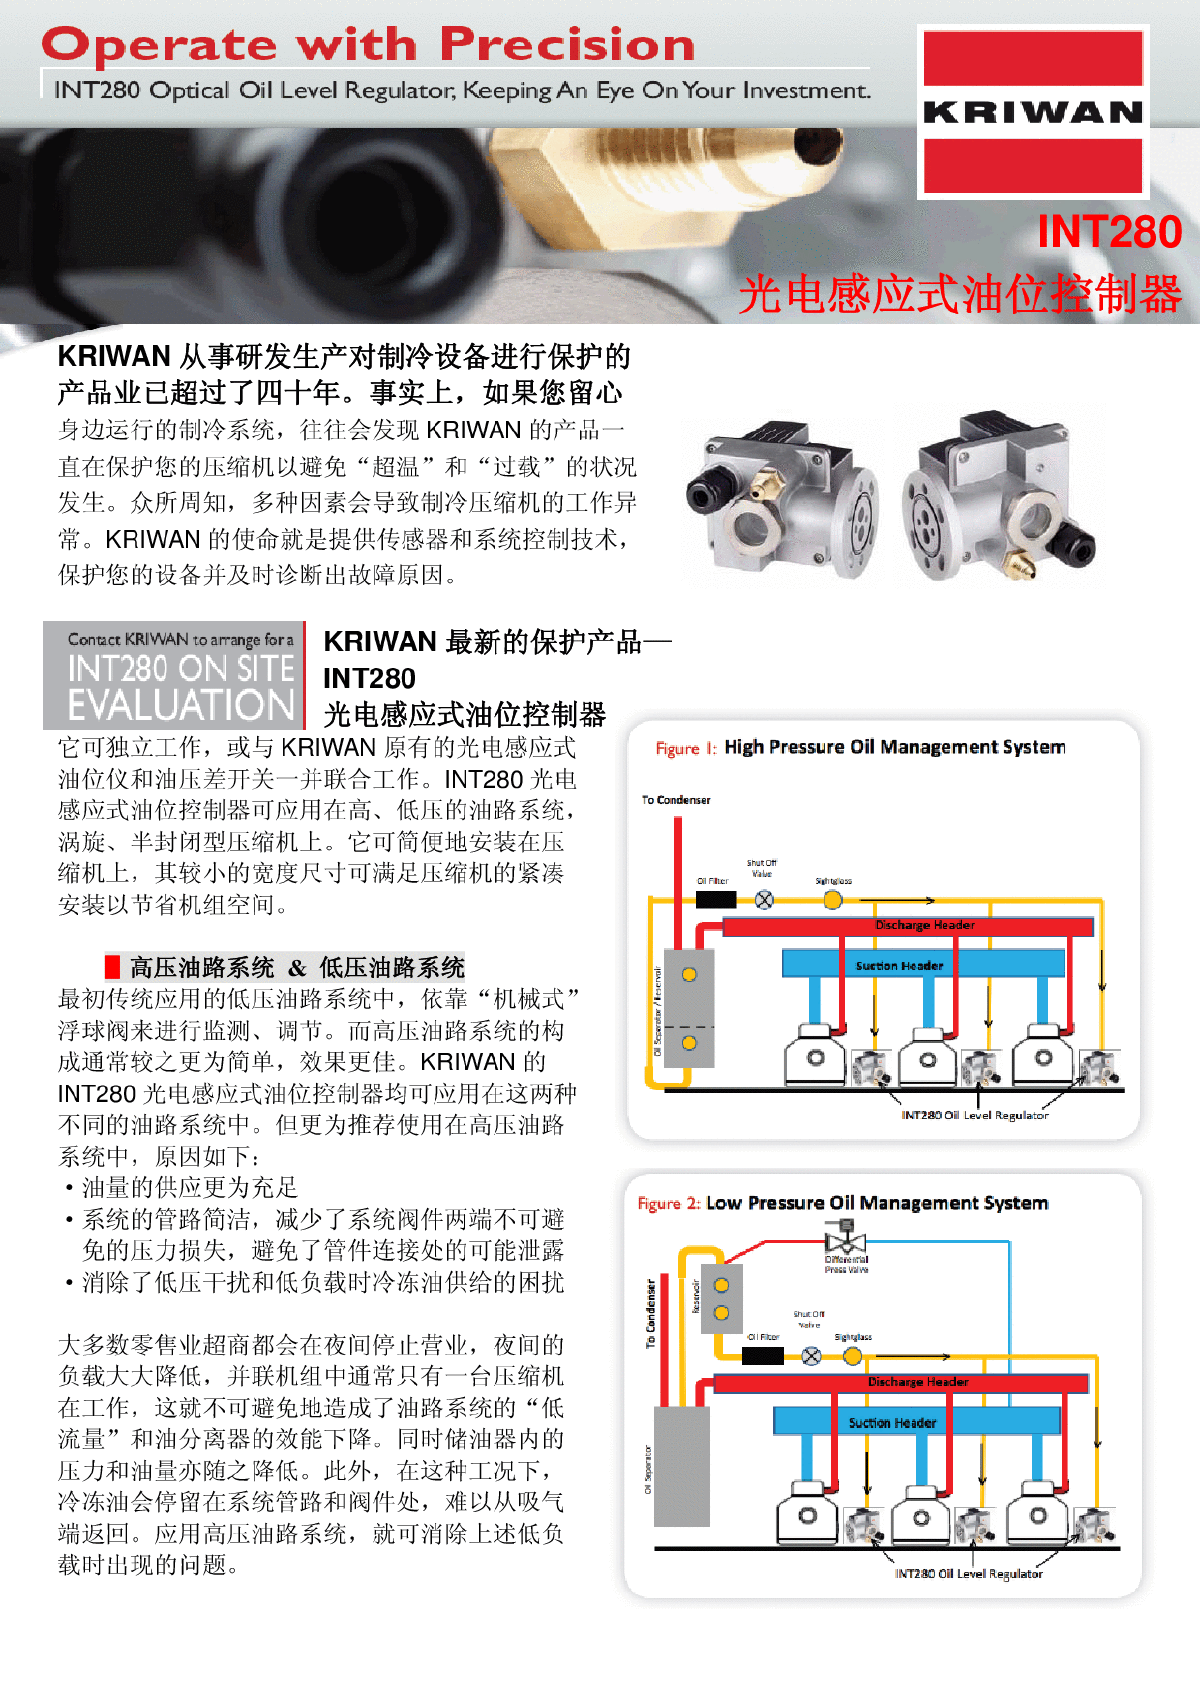 德KRIWAN光电油位控制(平衡)器INT280